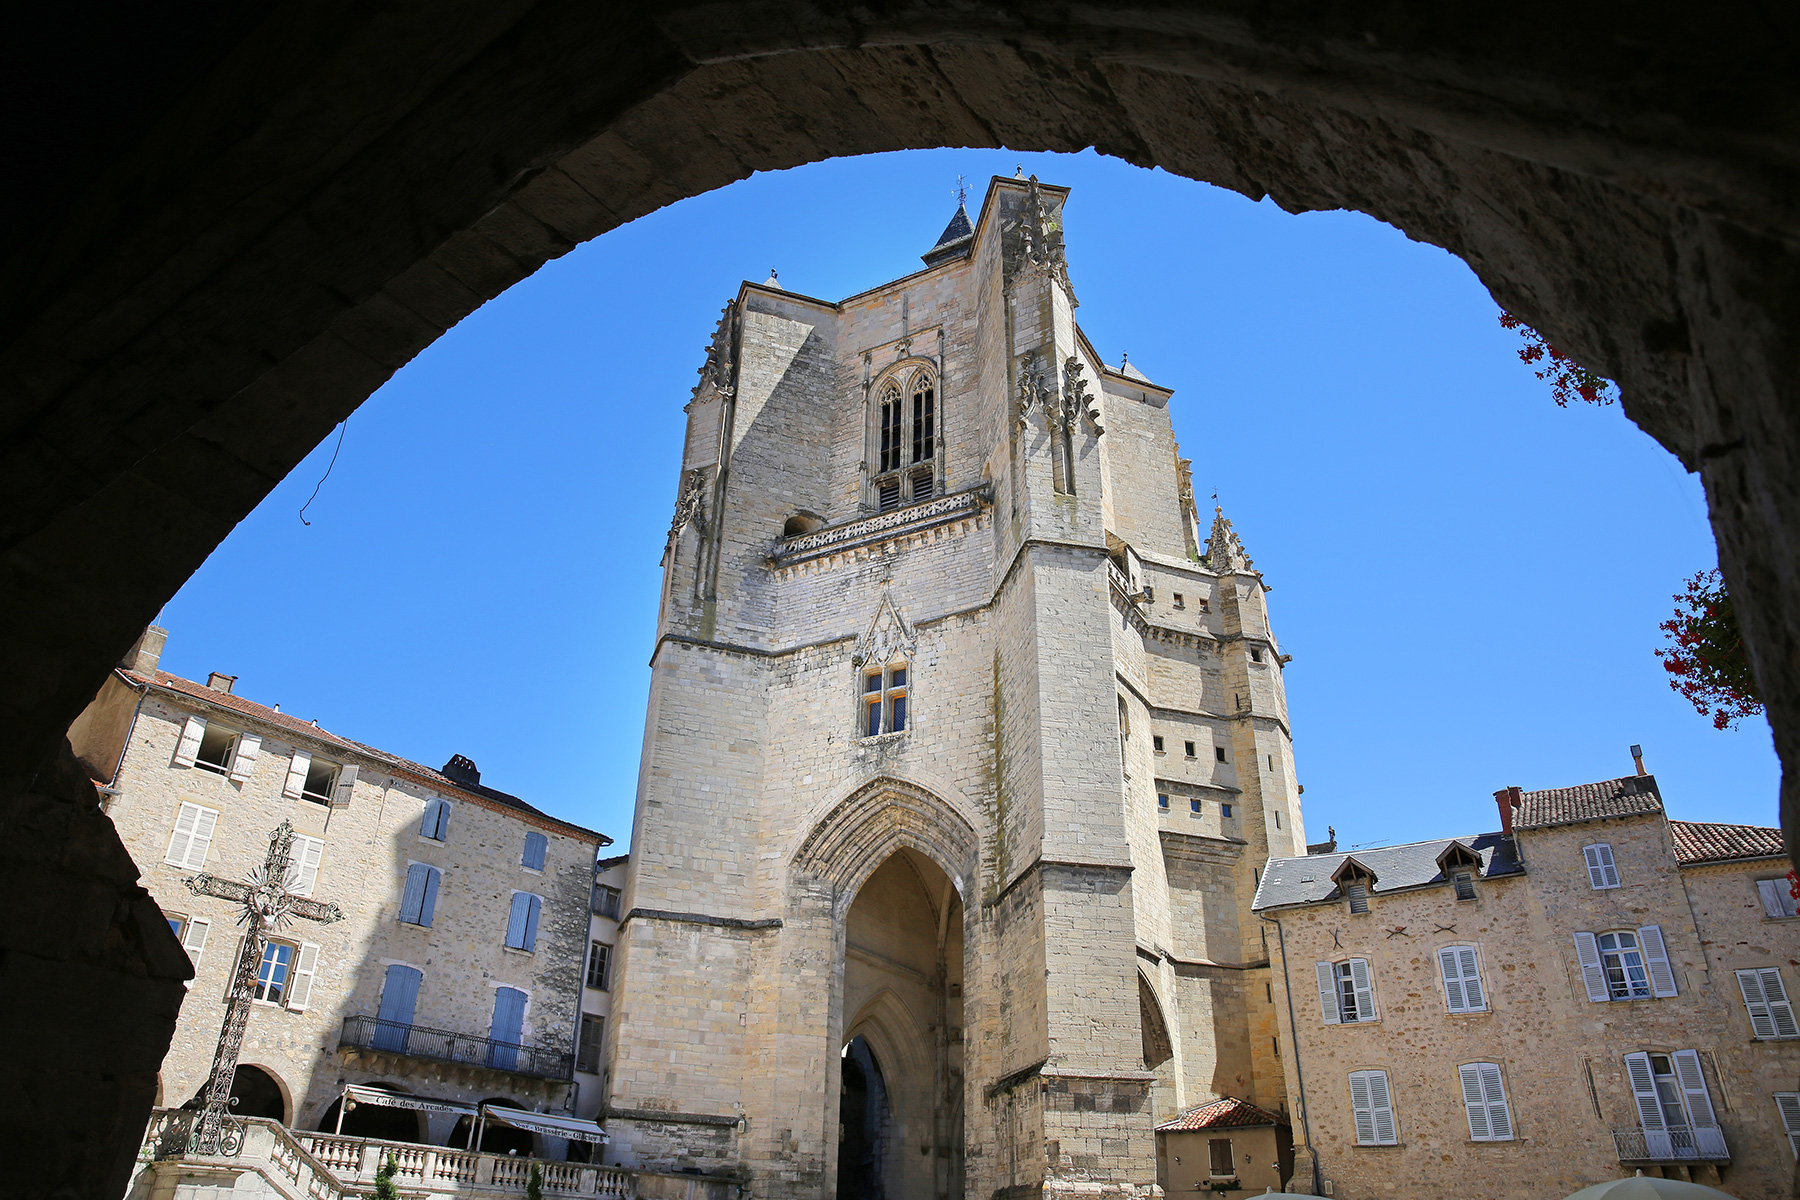 Notre Dame Collegiate Church in Villefranche